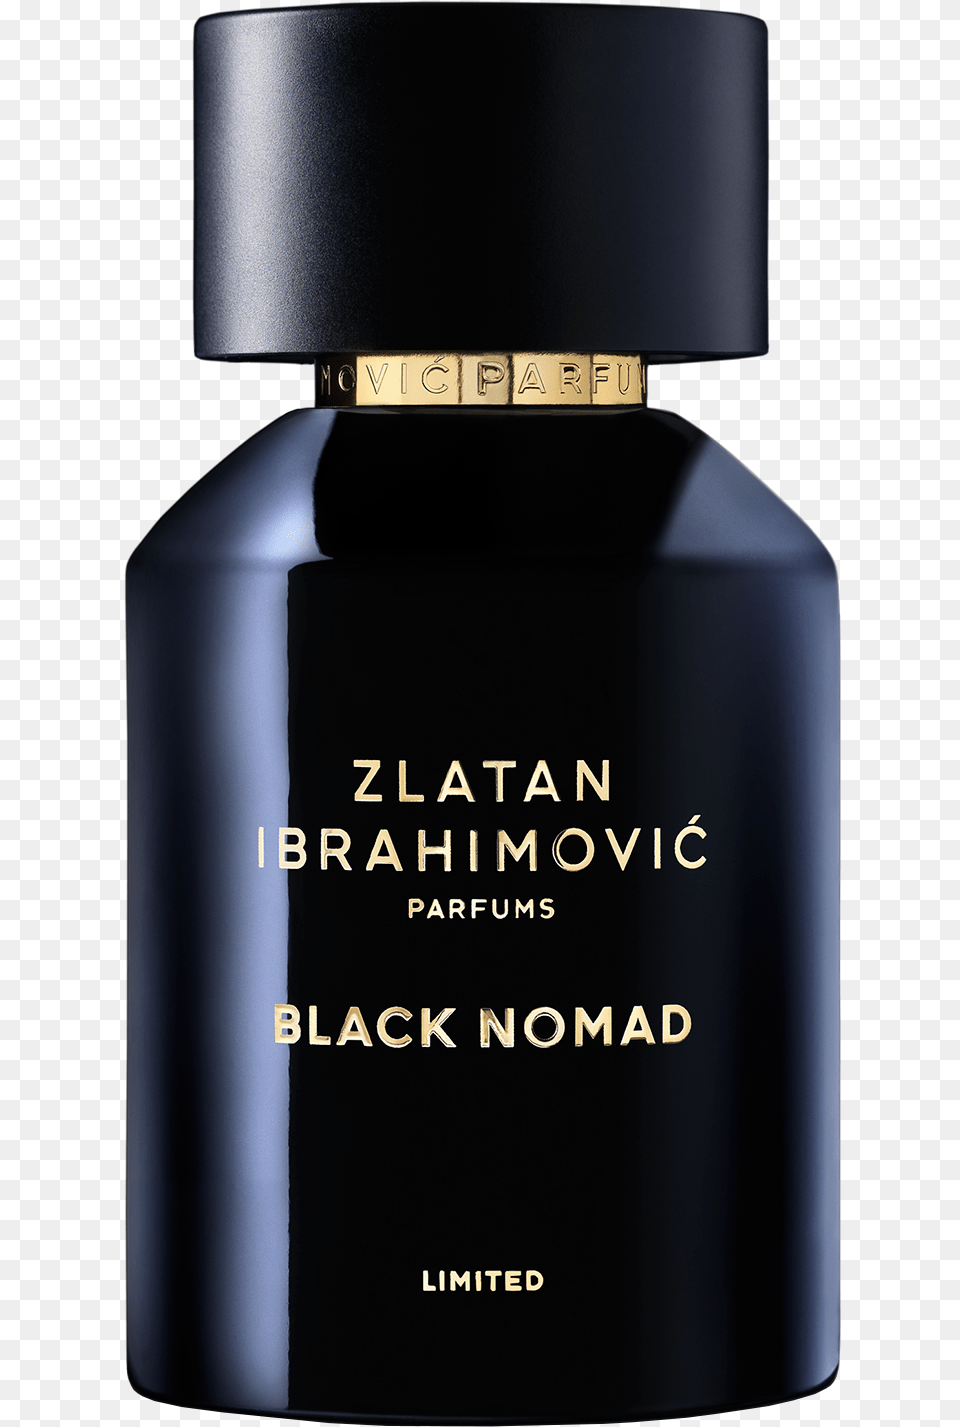 Black Nomad Zlatan Ibrahimovic Black Nomad, Bottle, Cosmetics Free Png